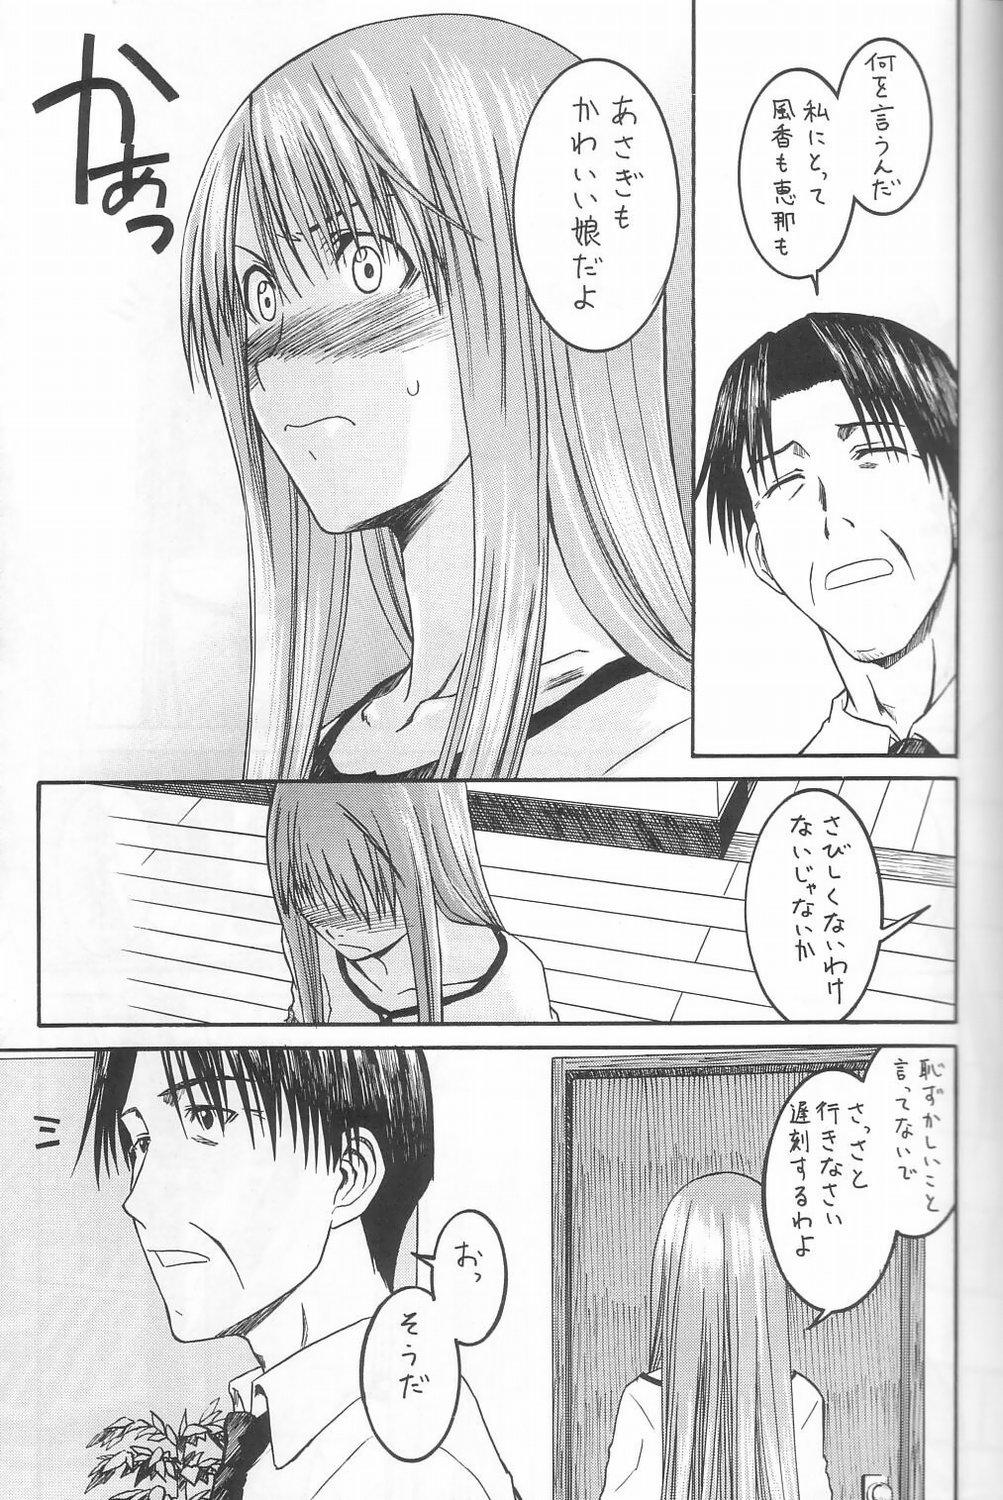 HD PRETTY NEIGHBOR&! Vol.3 - Yotsubato Puba - Page 4